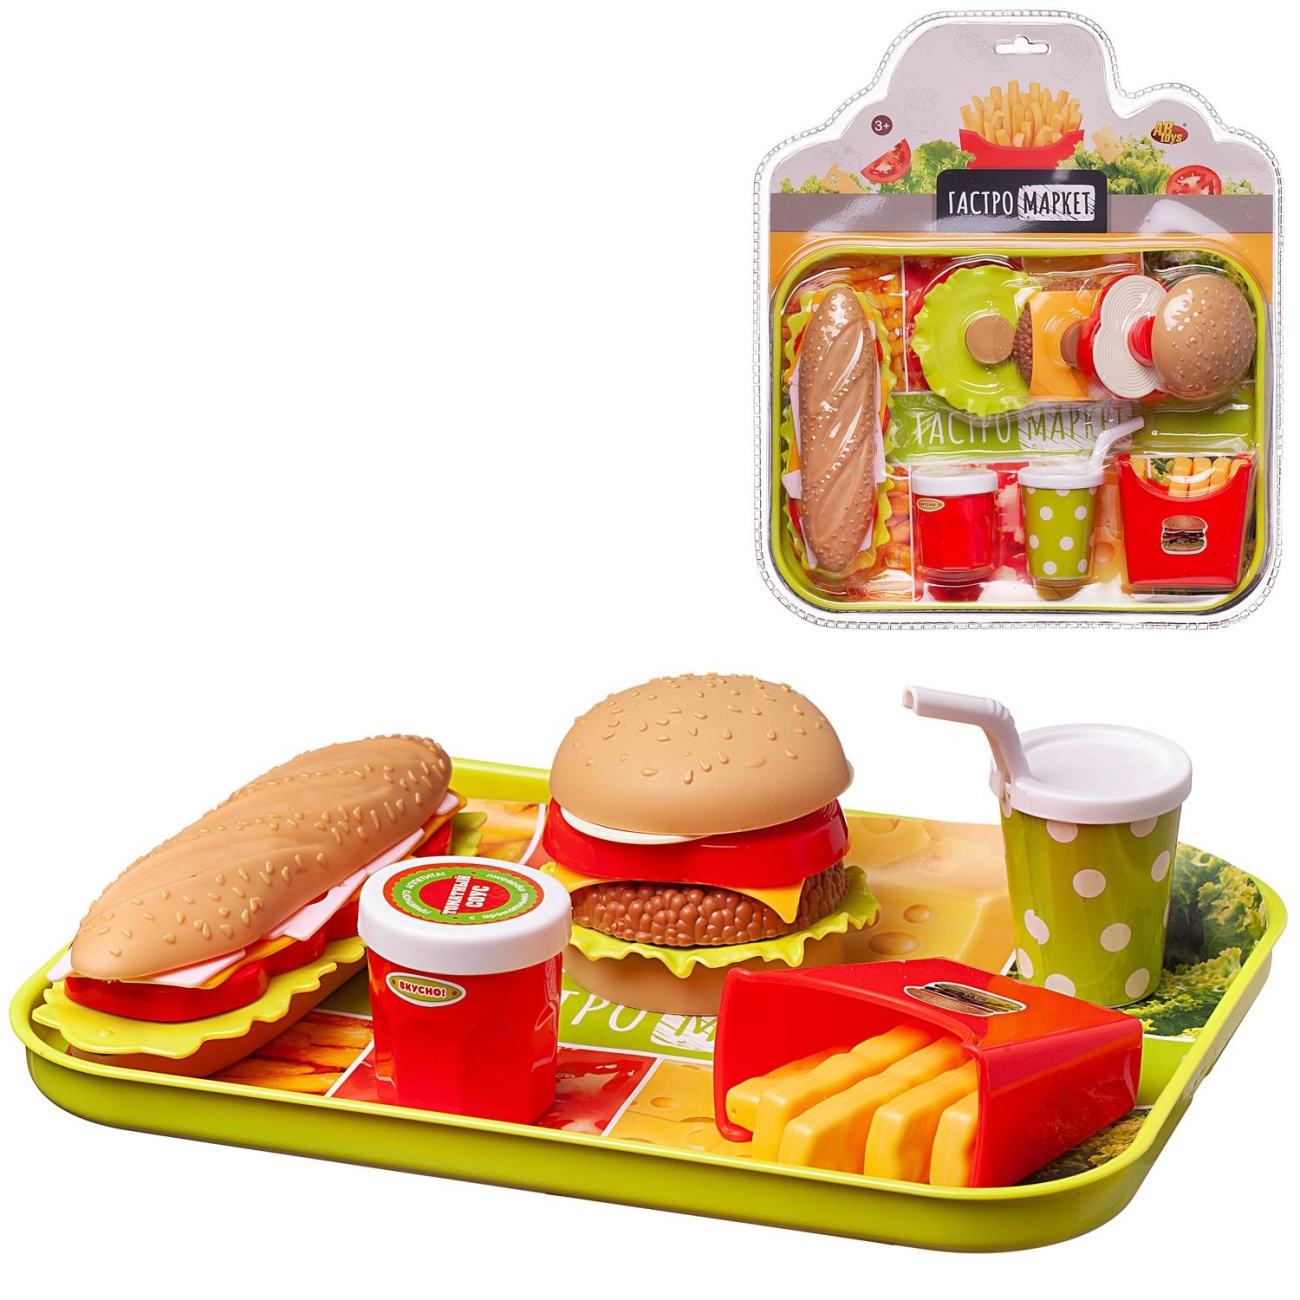 Игровой набор Abtoys Набор продуктов Гастромаркет (бутерброд, сэндвич, картошка, напиток) на подносе PT-01787